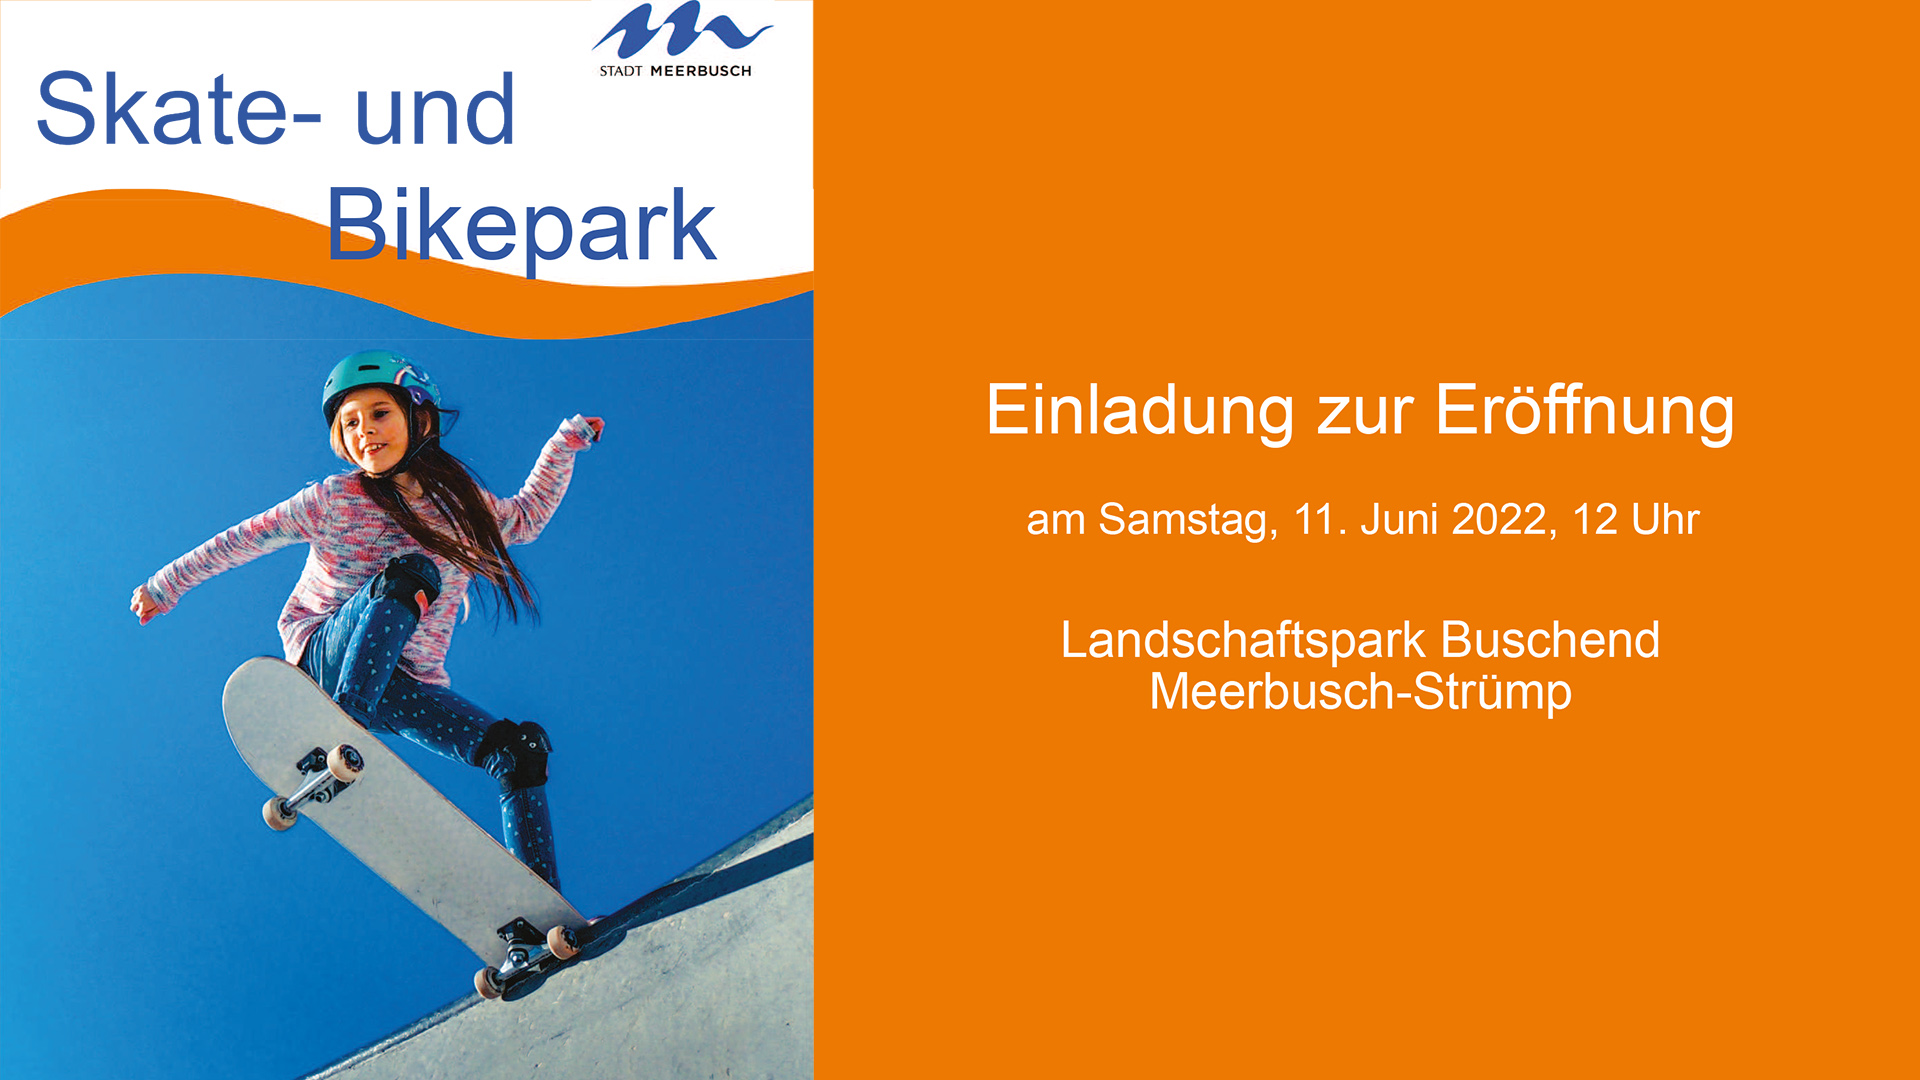 BL - Post - Skate- und Bikepark Meerbusch - Eroeffnung 11 Juni 2022